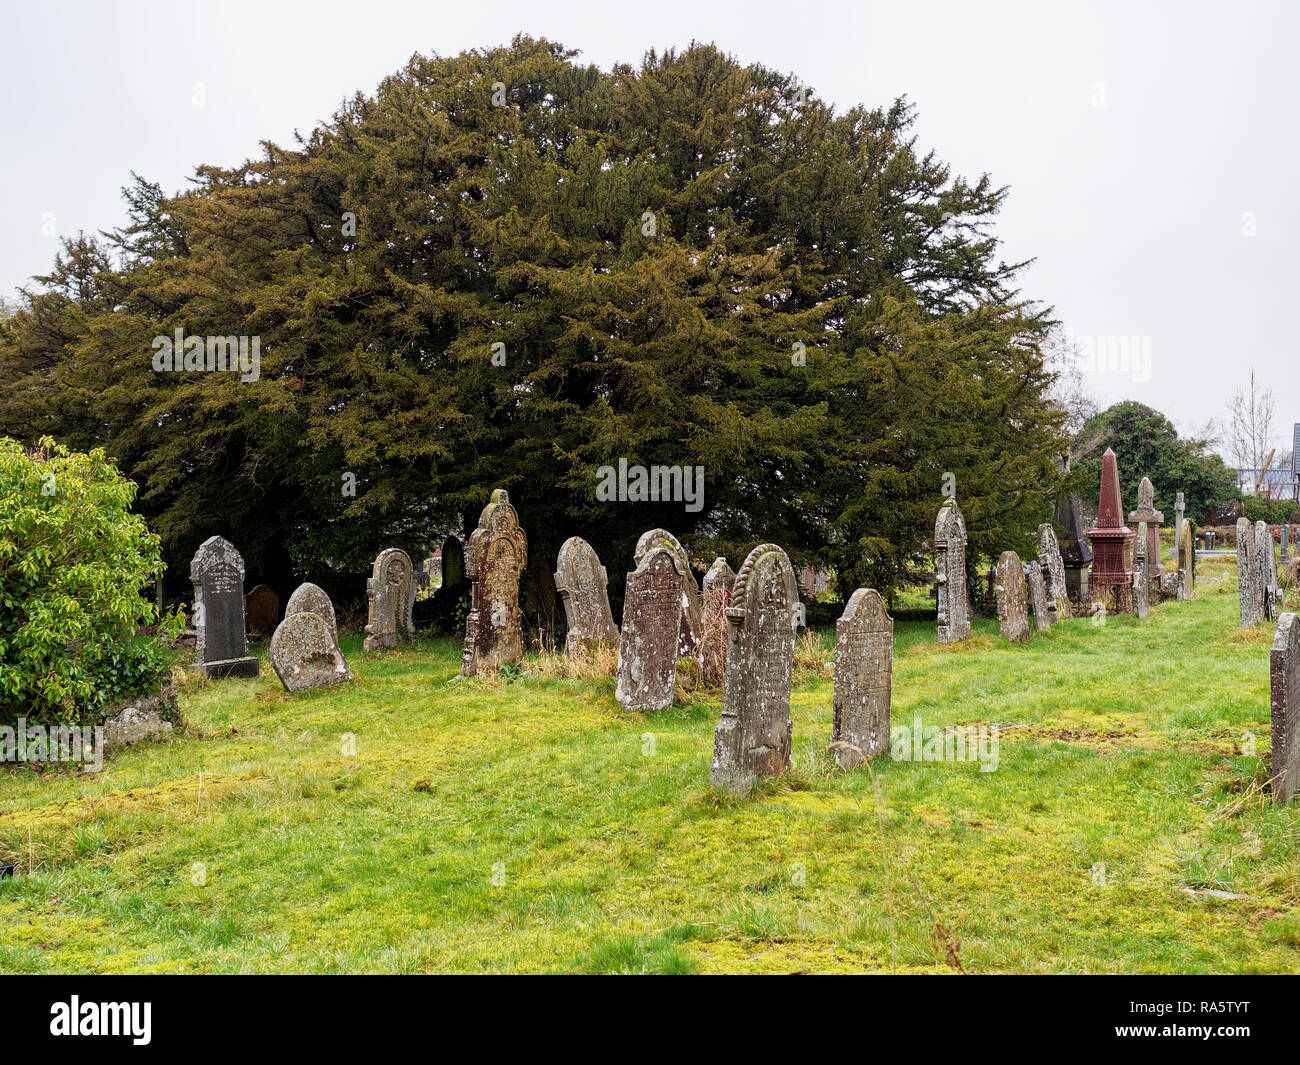 Ancient Yew Tree, Defynnog, Powys Stock Photo